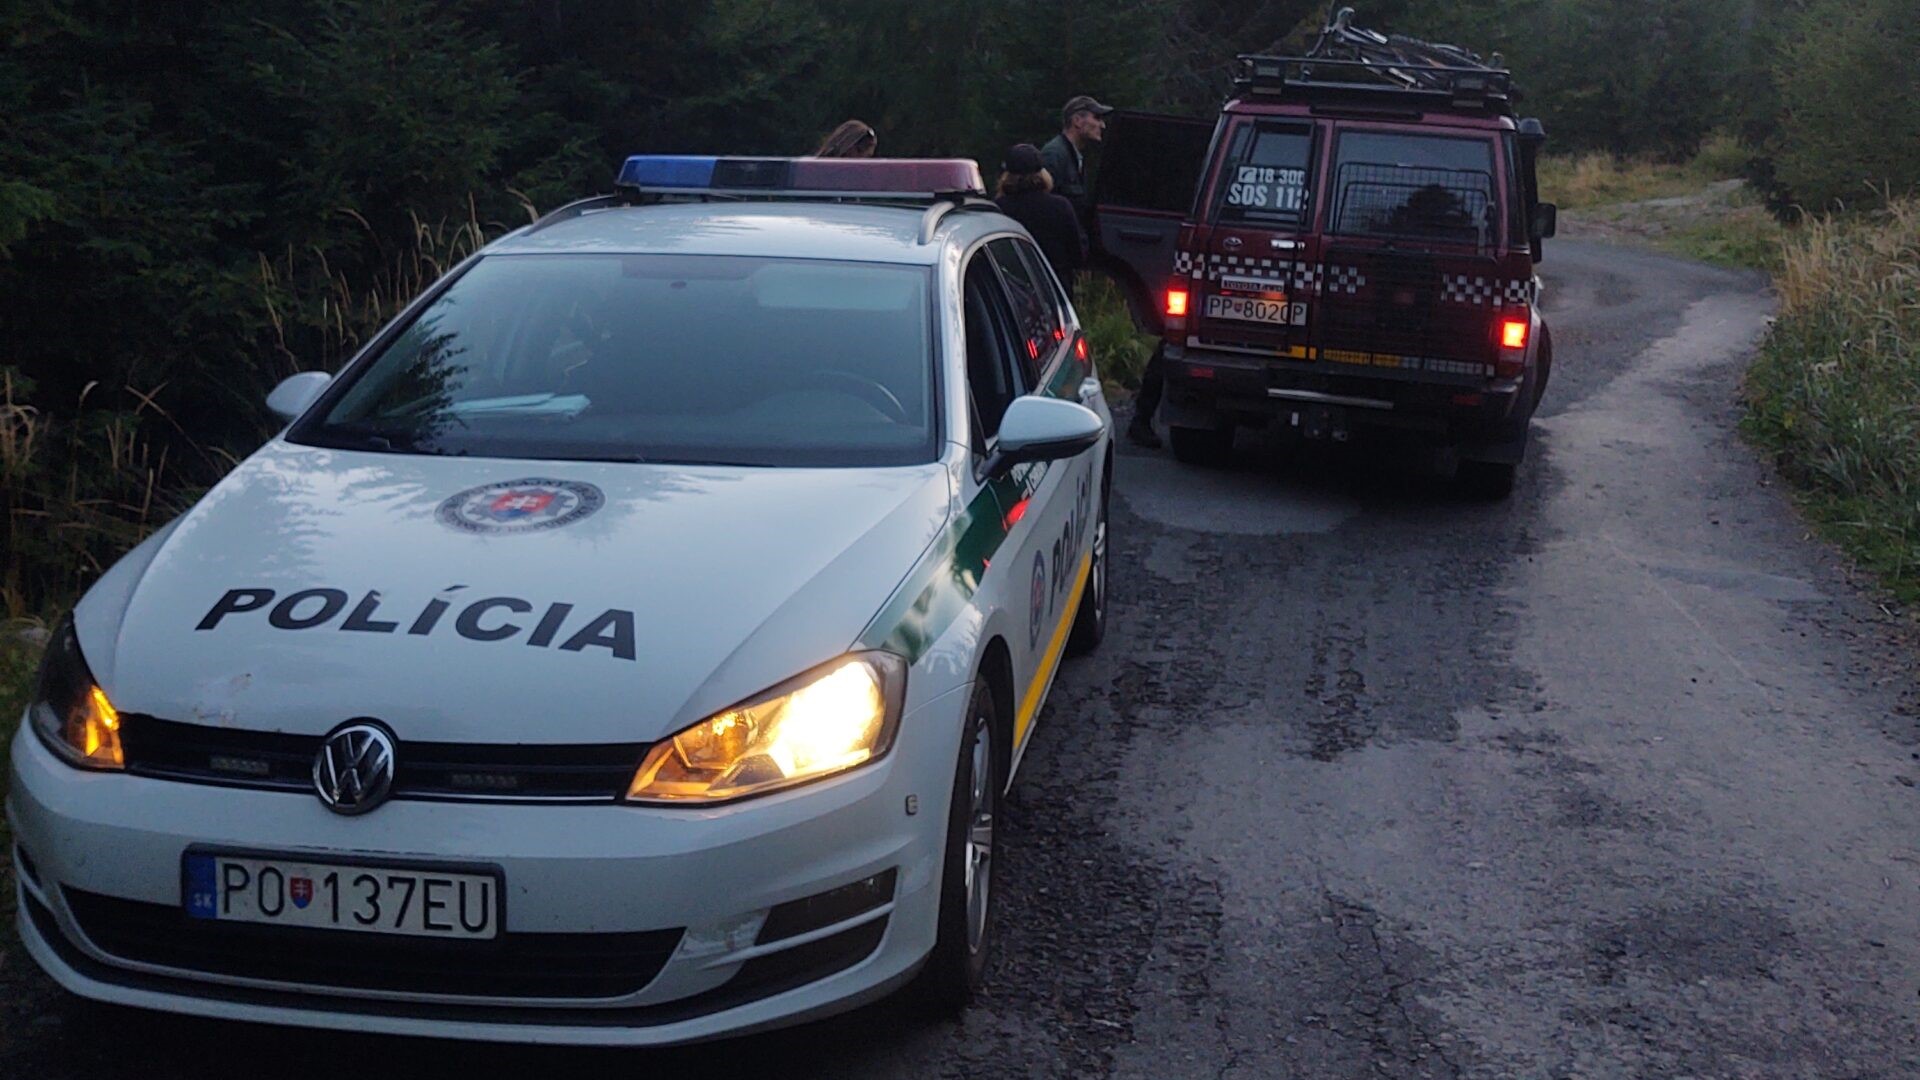 Samochód HZS i słowacka policja